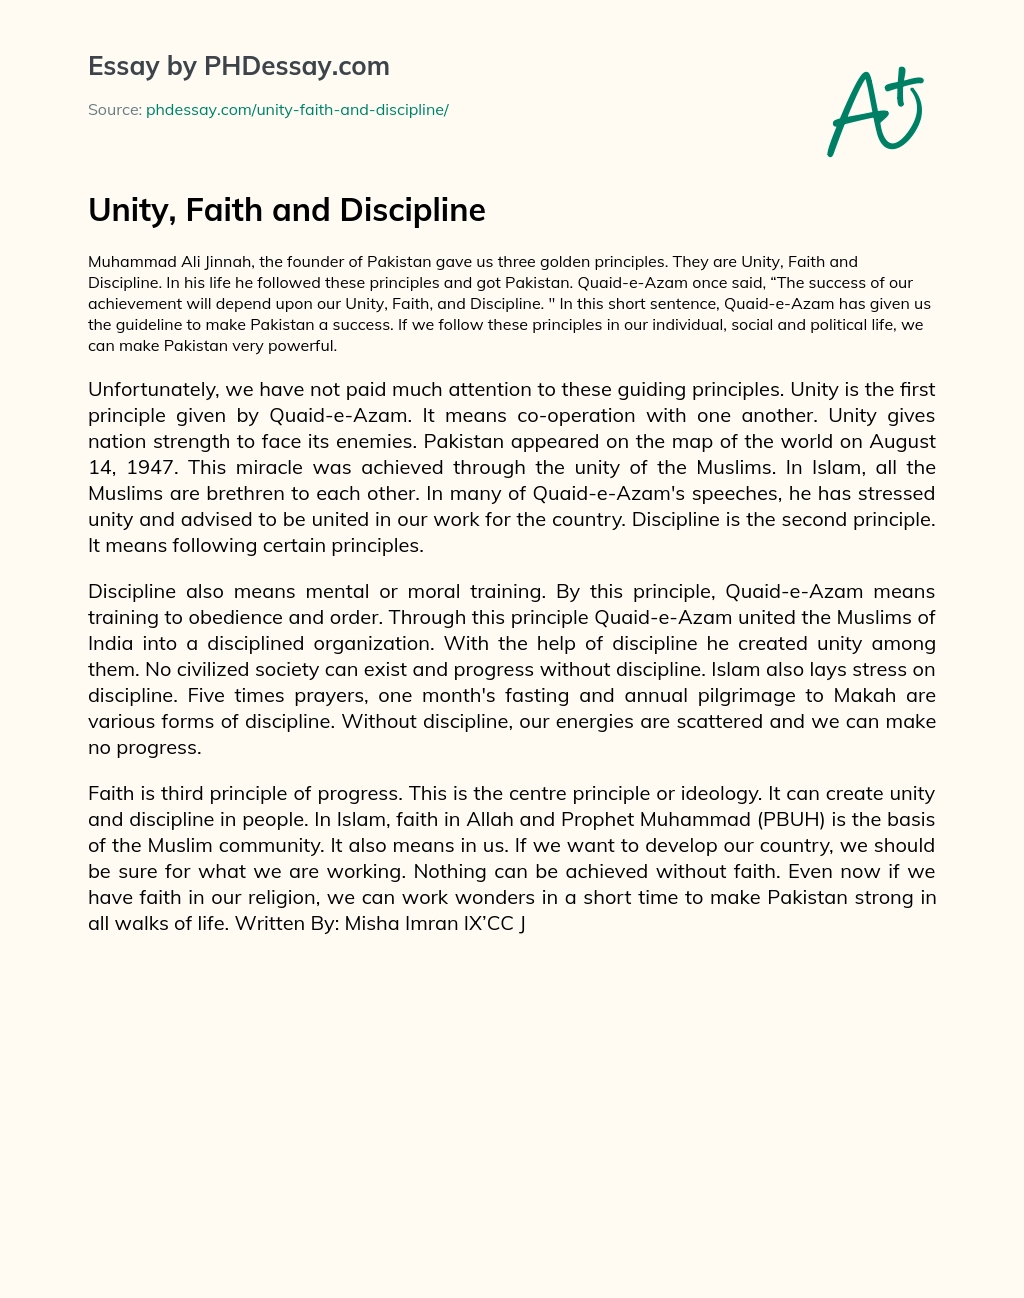 Unity, Faith and Discipline essay